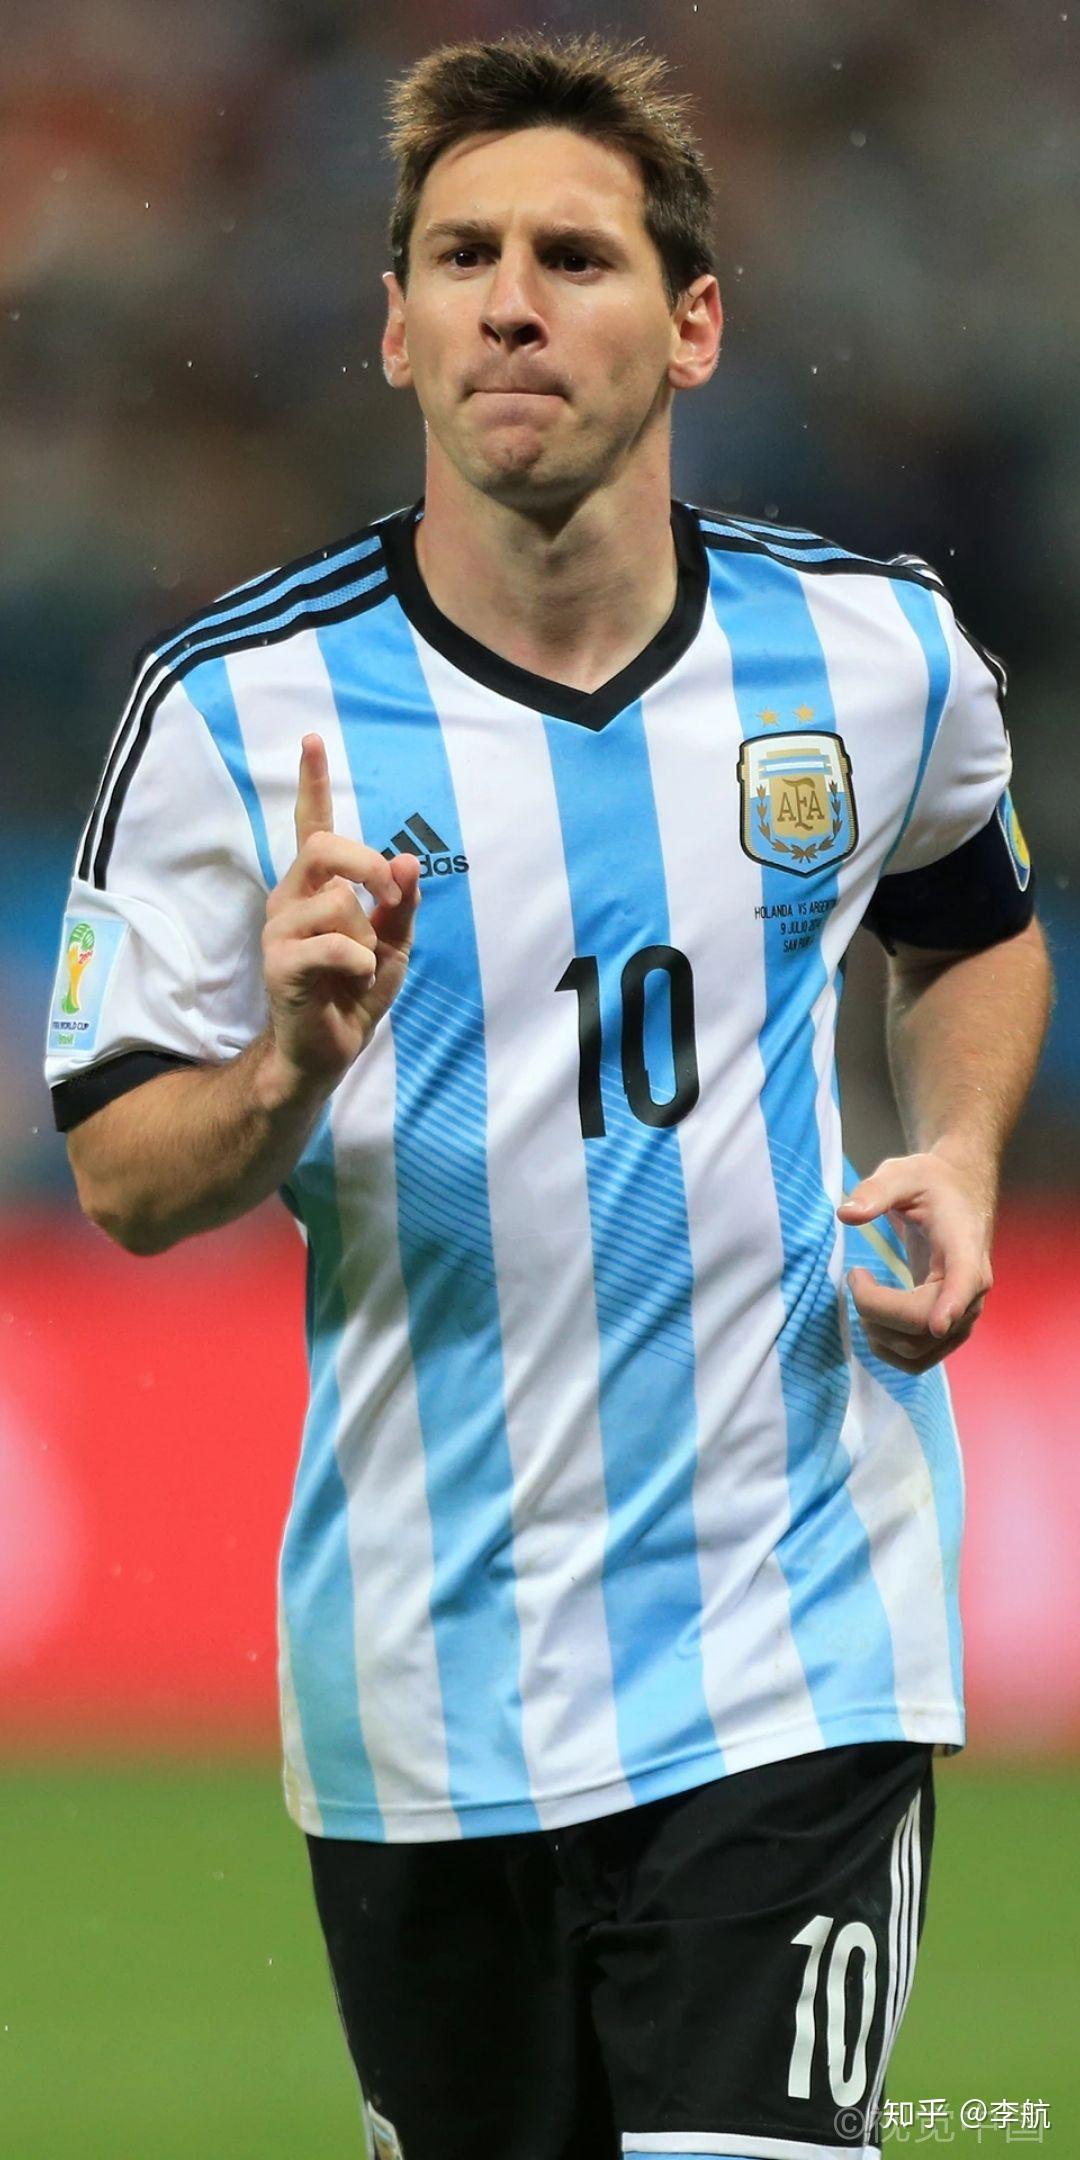 2020 迈向伟大航道的球神梅西-Messi 一代足球巨星壁纸